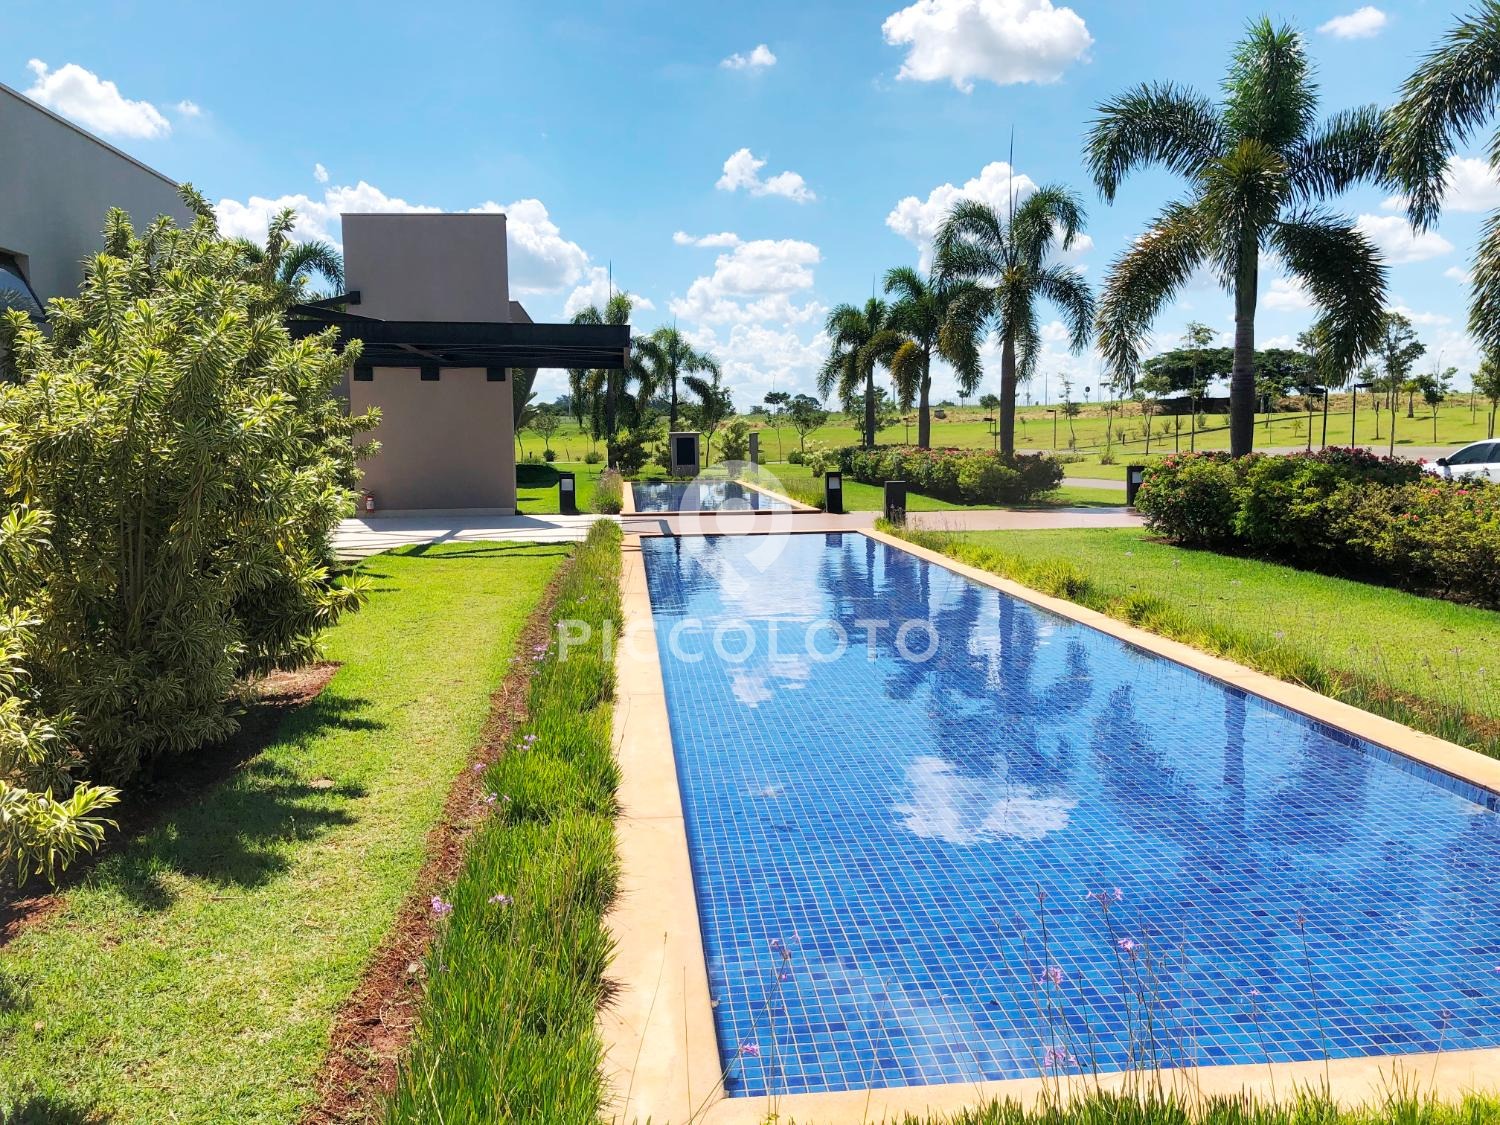 Piccoloto -Casa à venda no Jaguariuna em Jaguariúna